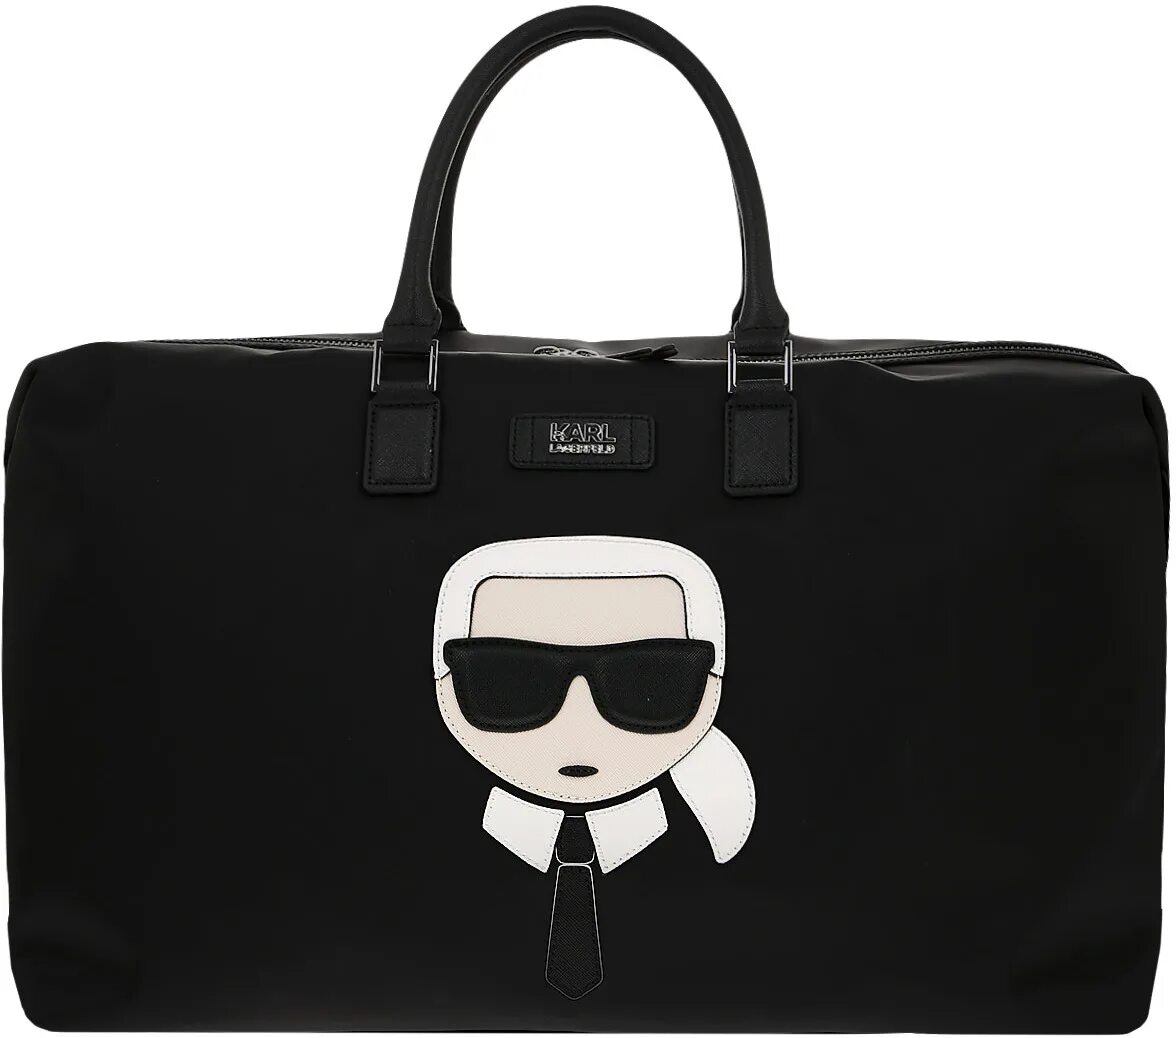 Купить сумку лагерфельд оригинал. Сумка Karl Lagerfeld черная. Сумка Karl Lagerfeld ikonik черная.